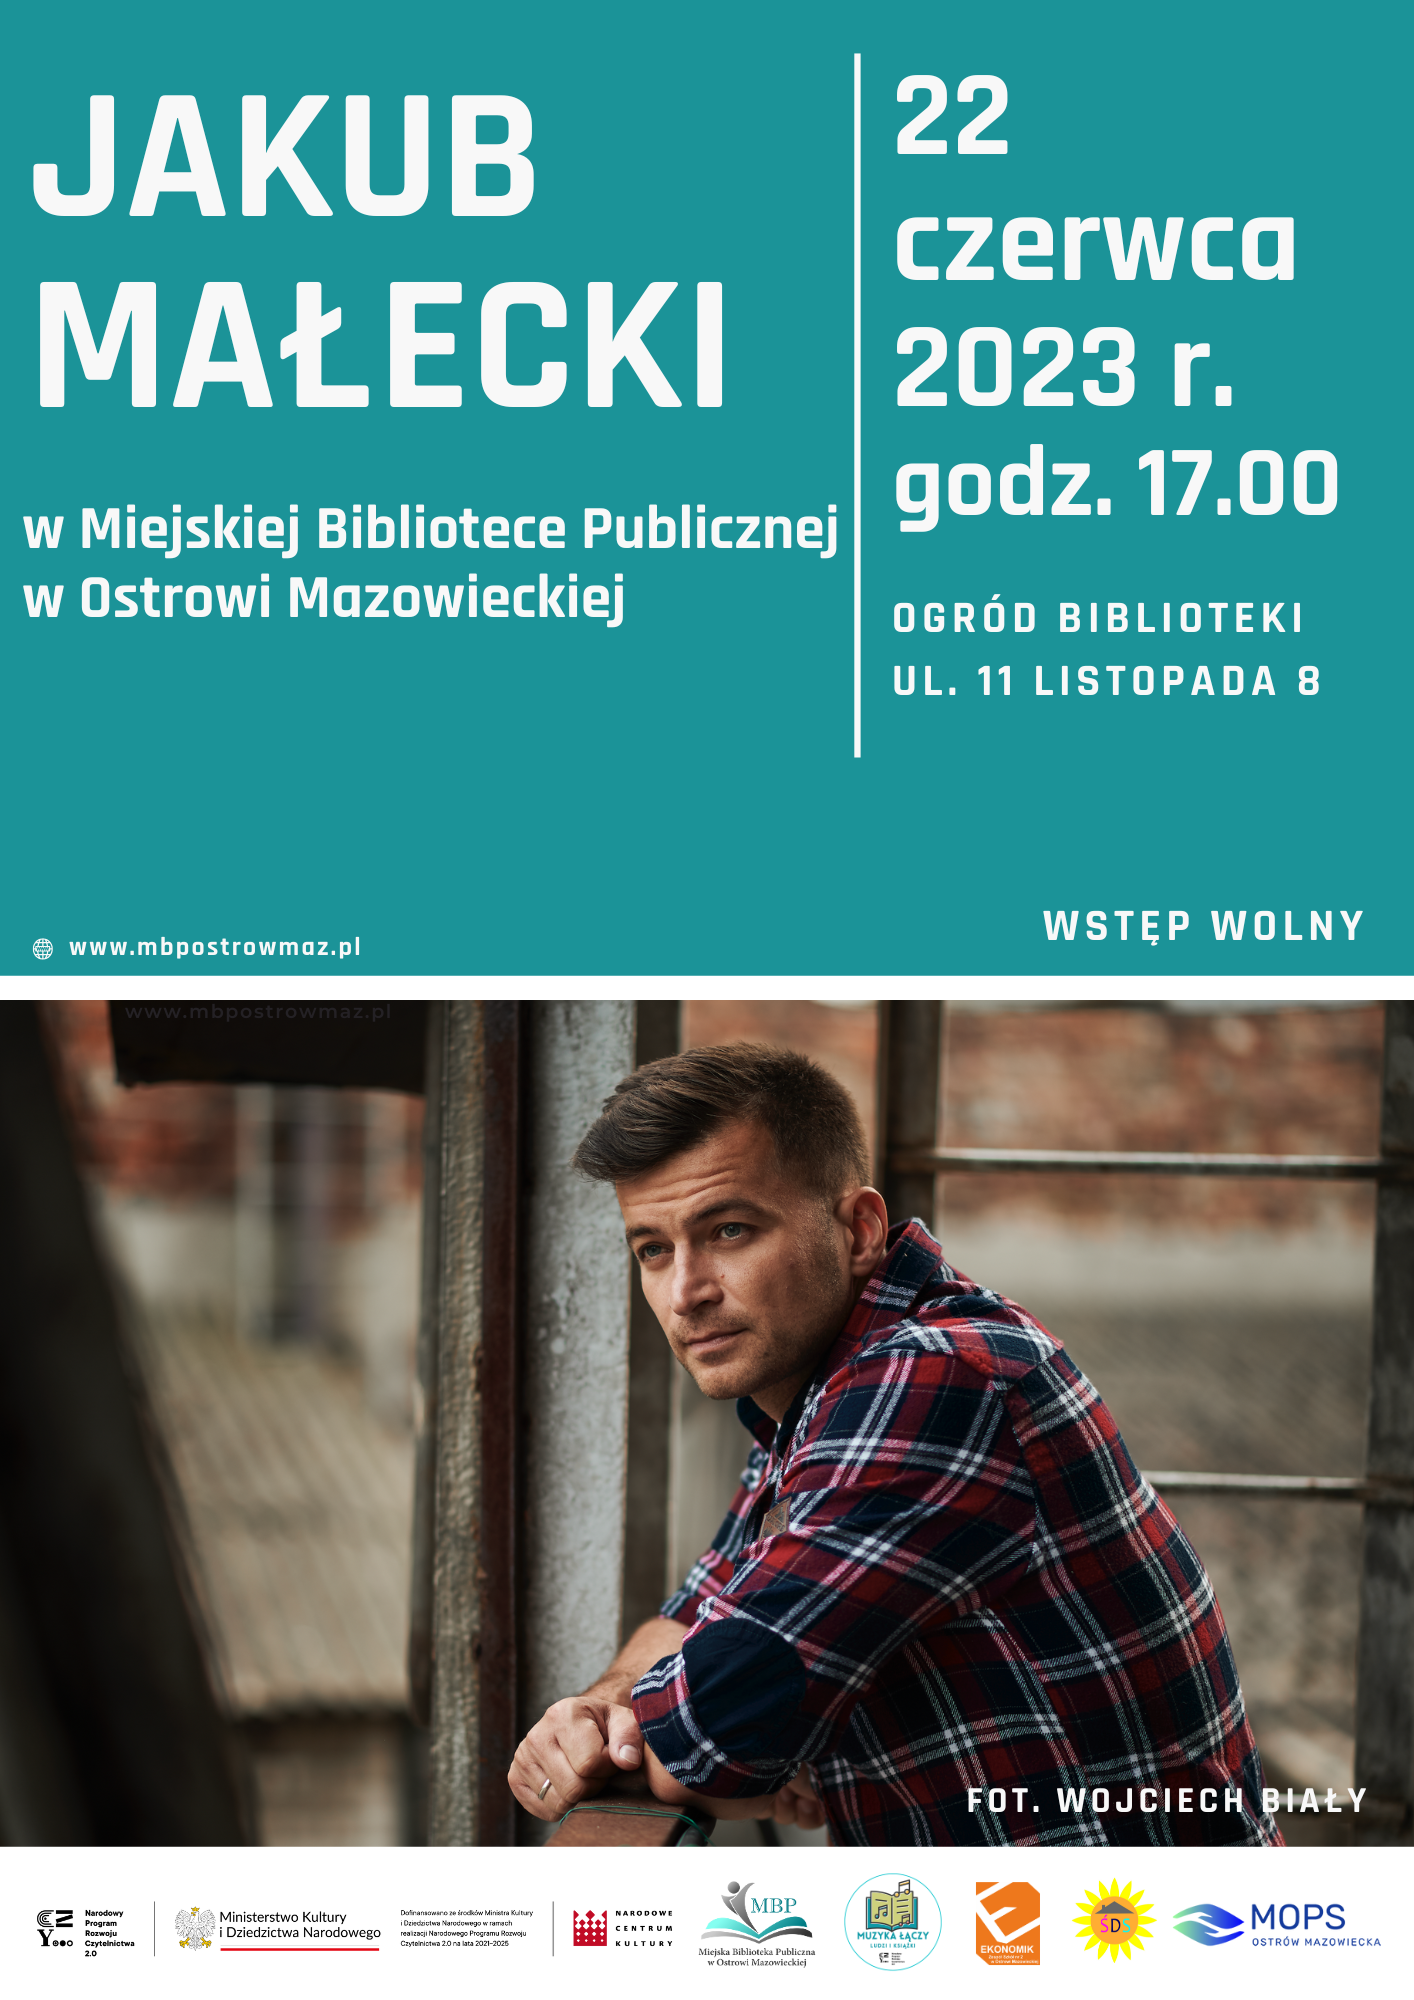 Jakub Małecki w Miejskiej Bibliotece Publicznej w Ostrowi Mazowieckiej, 22 czerwca 2023 r, godz. 17.00, ogród biblioteki, wstęp wolny